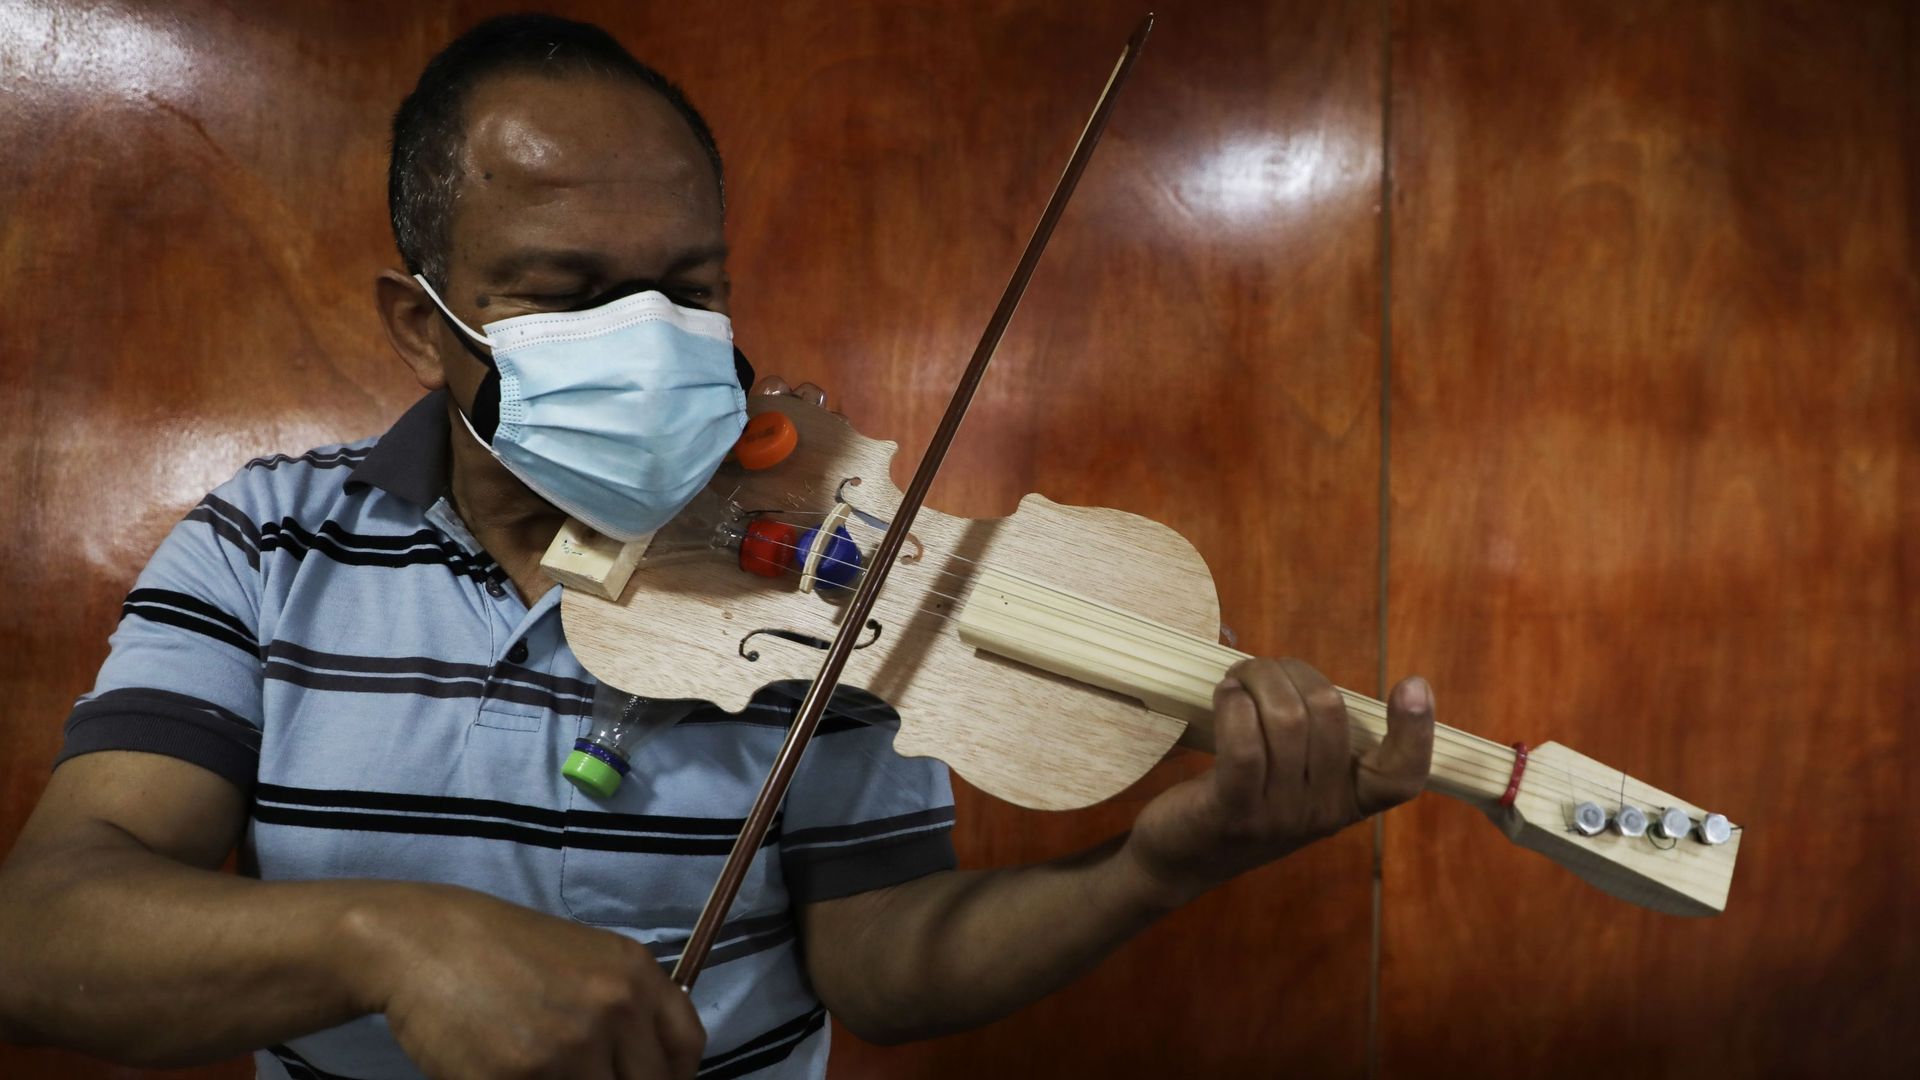 Jesus Peralta, violoniste et professeur, crée des violons pour ses élèves à partir de matière recyclées